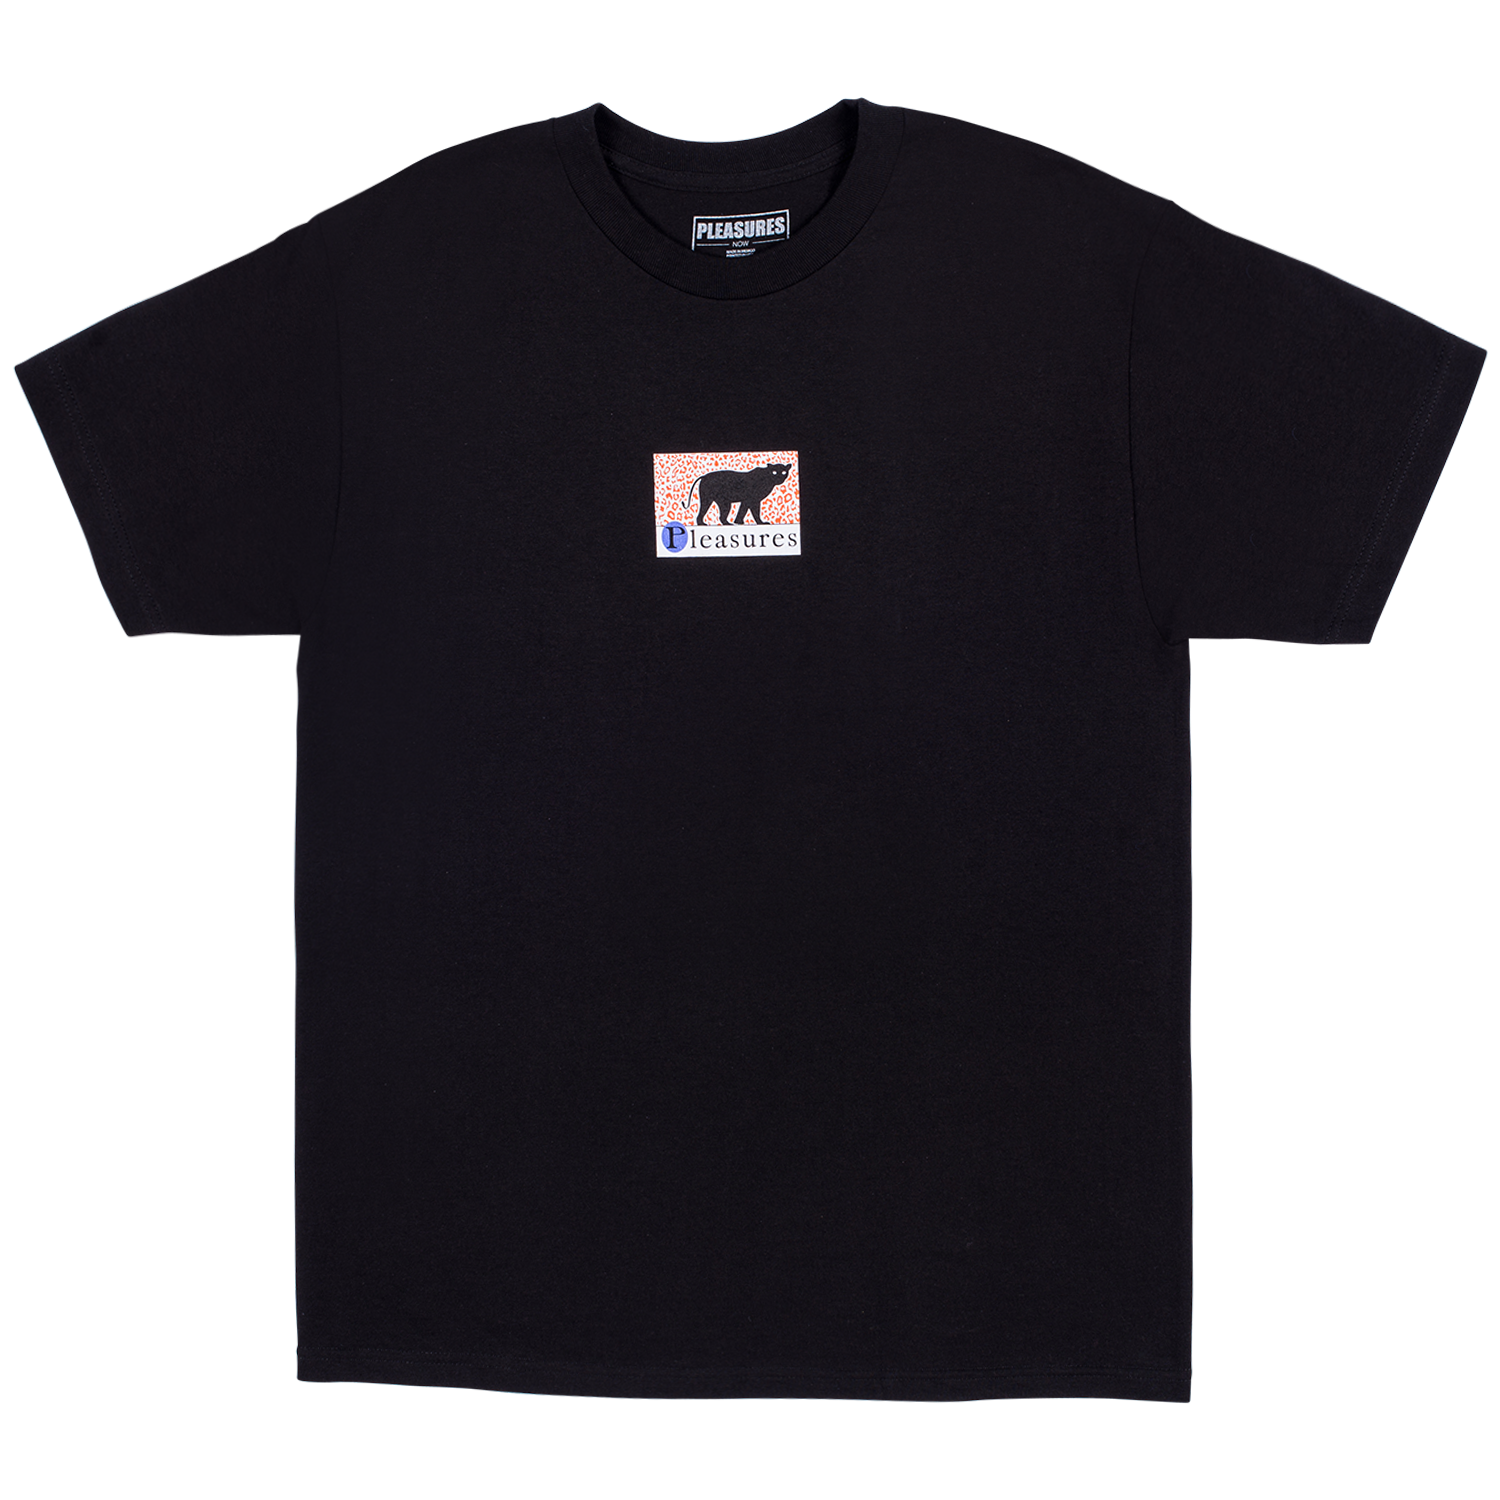 Pleasures Big Cat T-Shirt (Black)